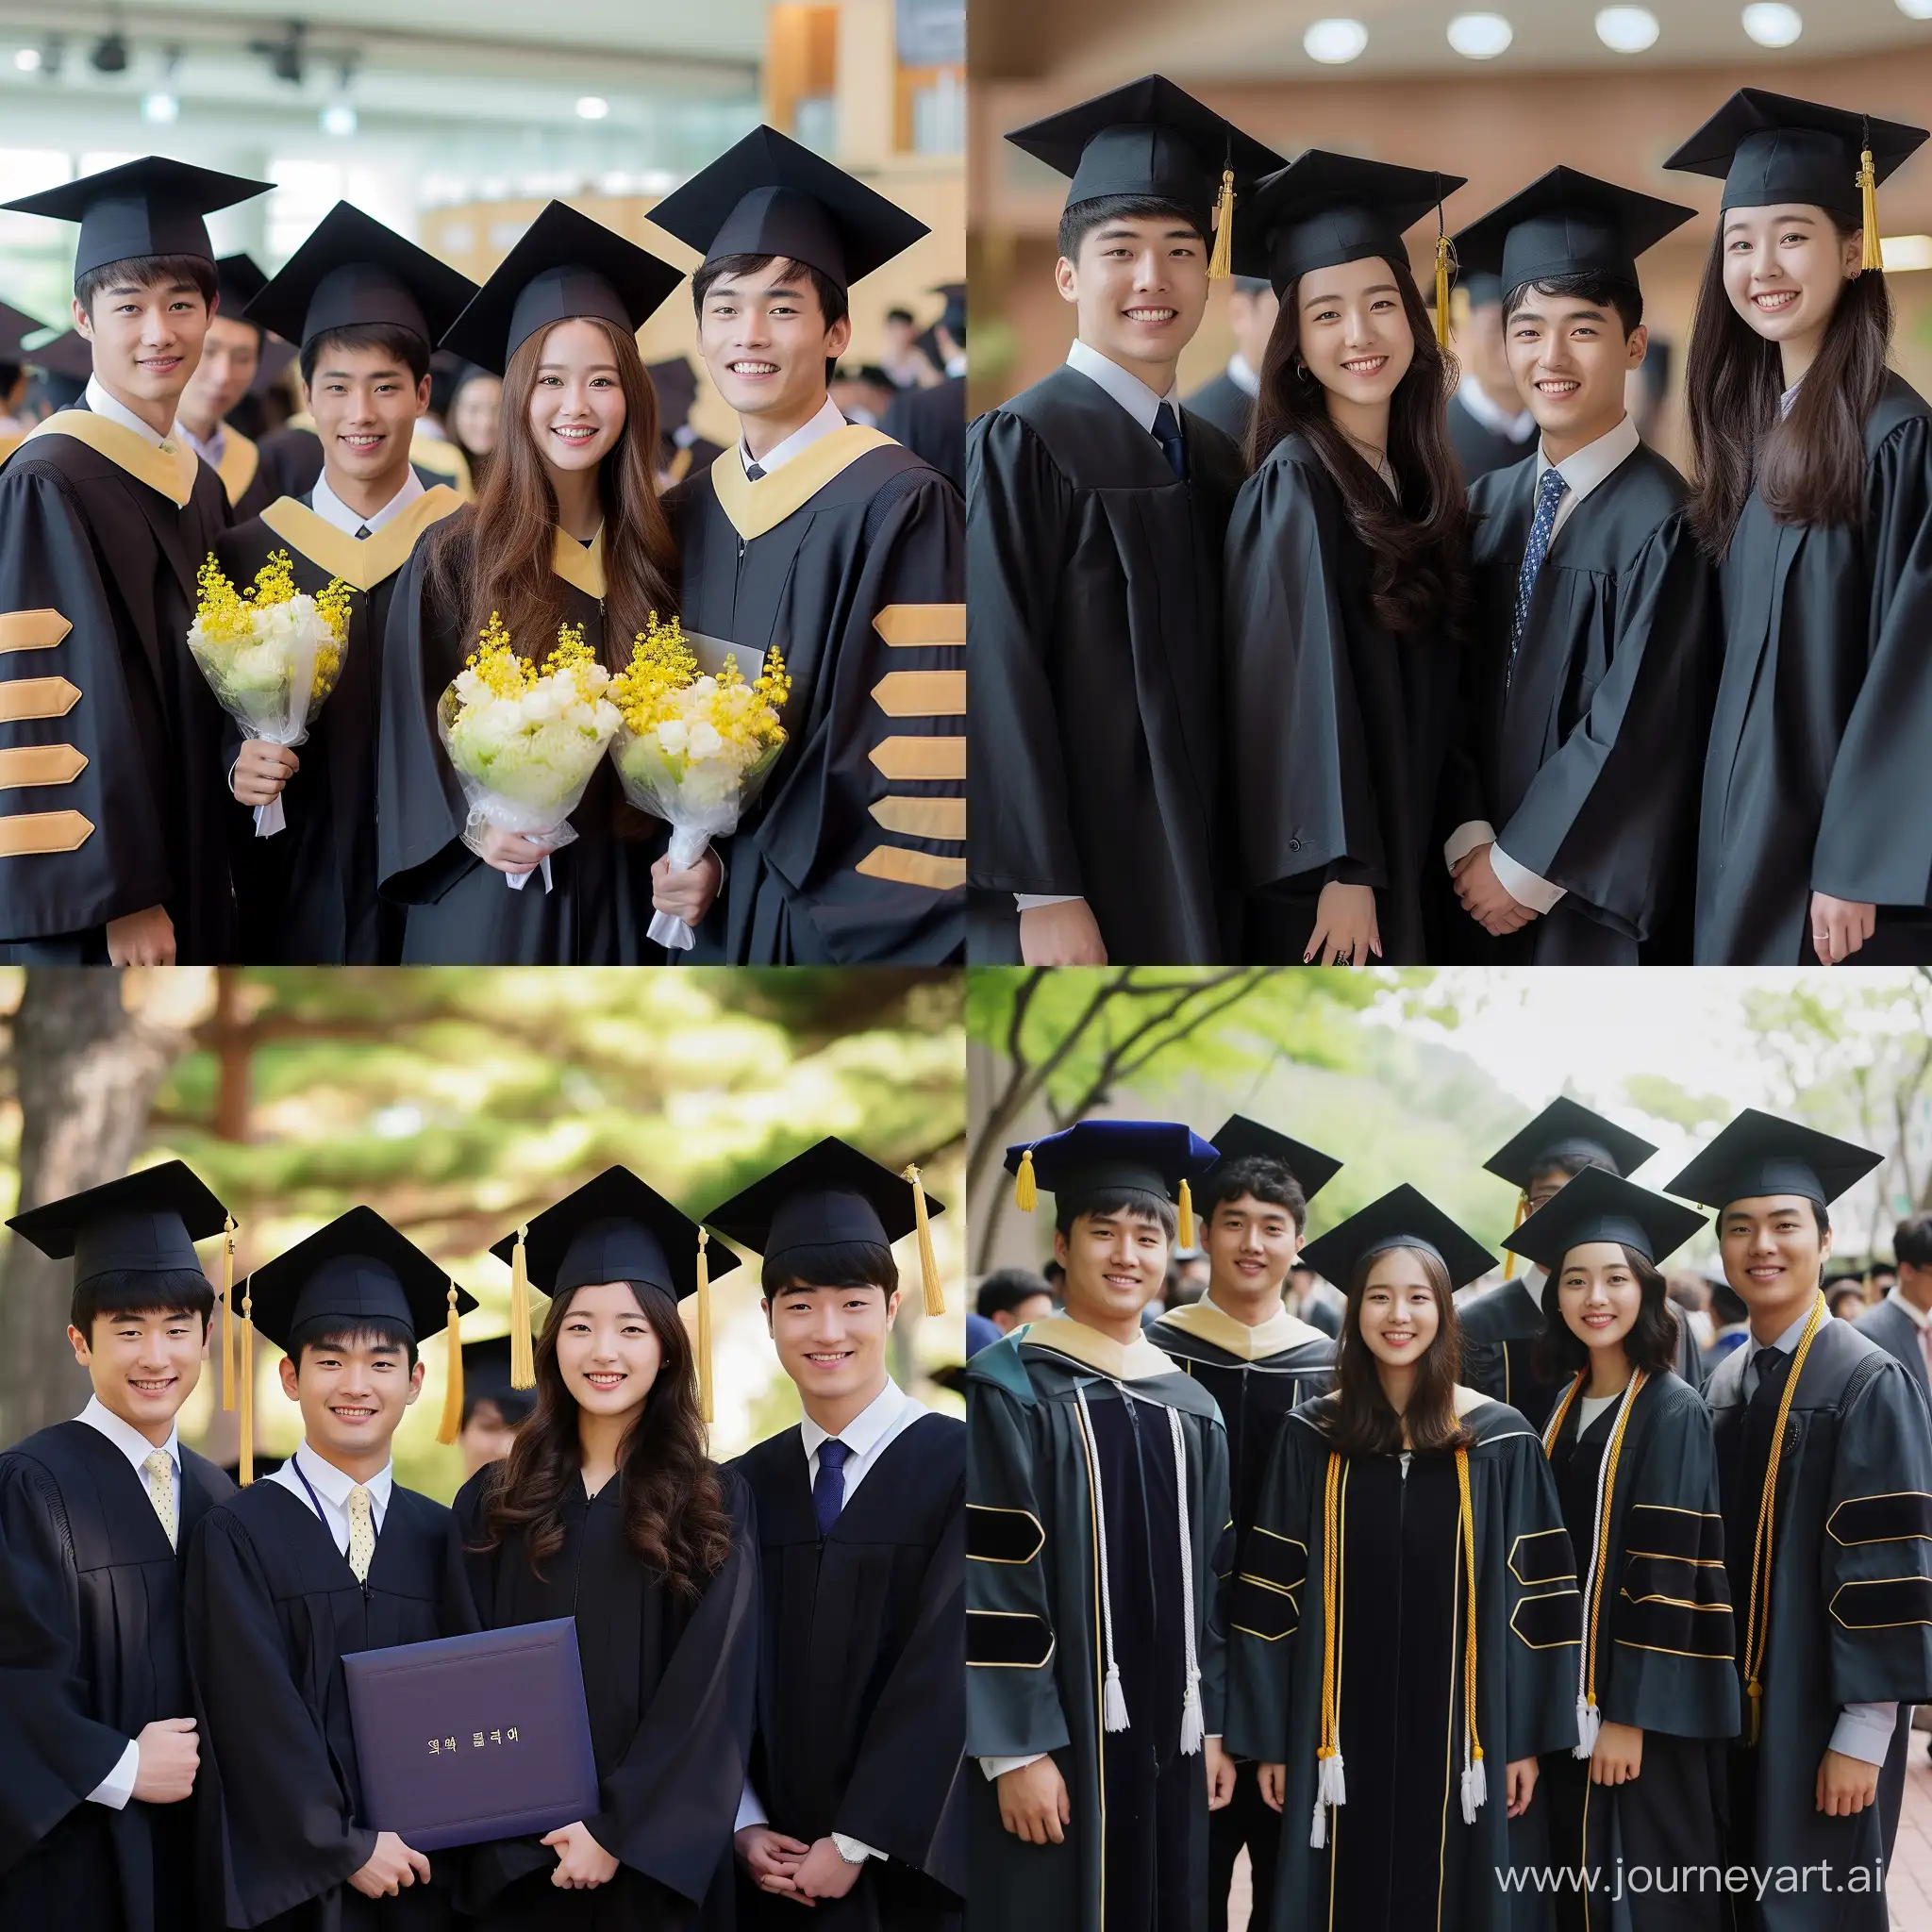 한국 남자 졸업생 4명, 한국 여자 졸업생 1명의 단체 사진